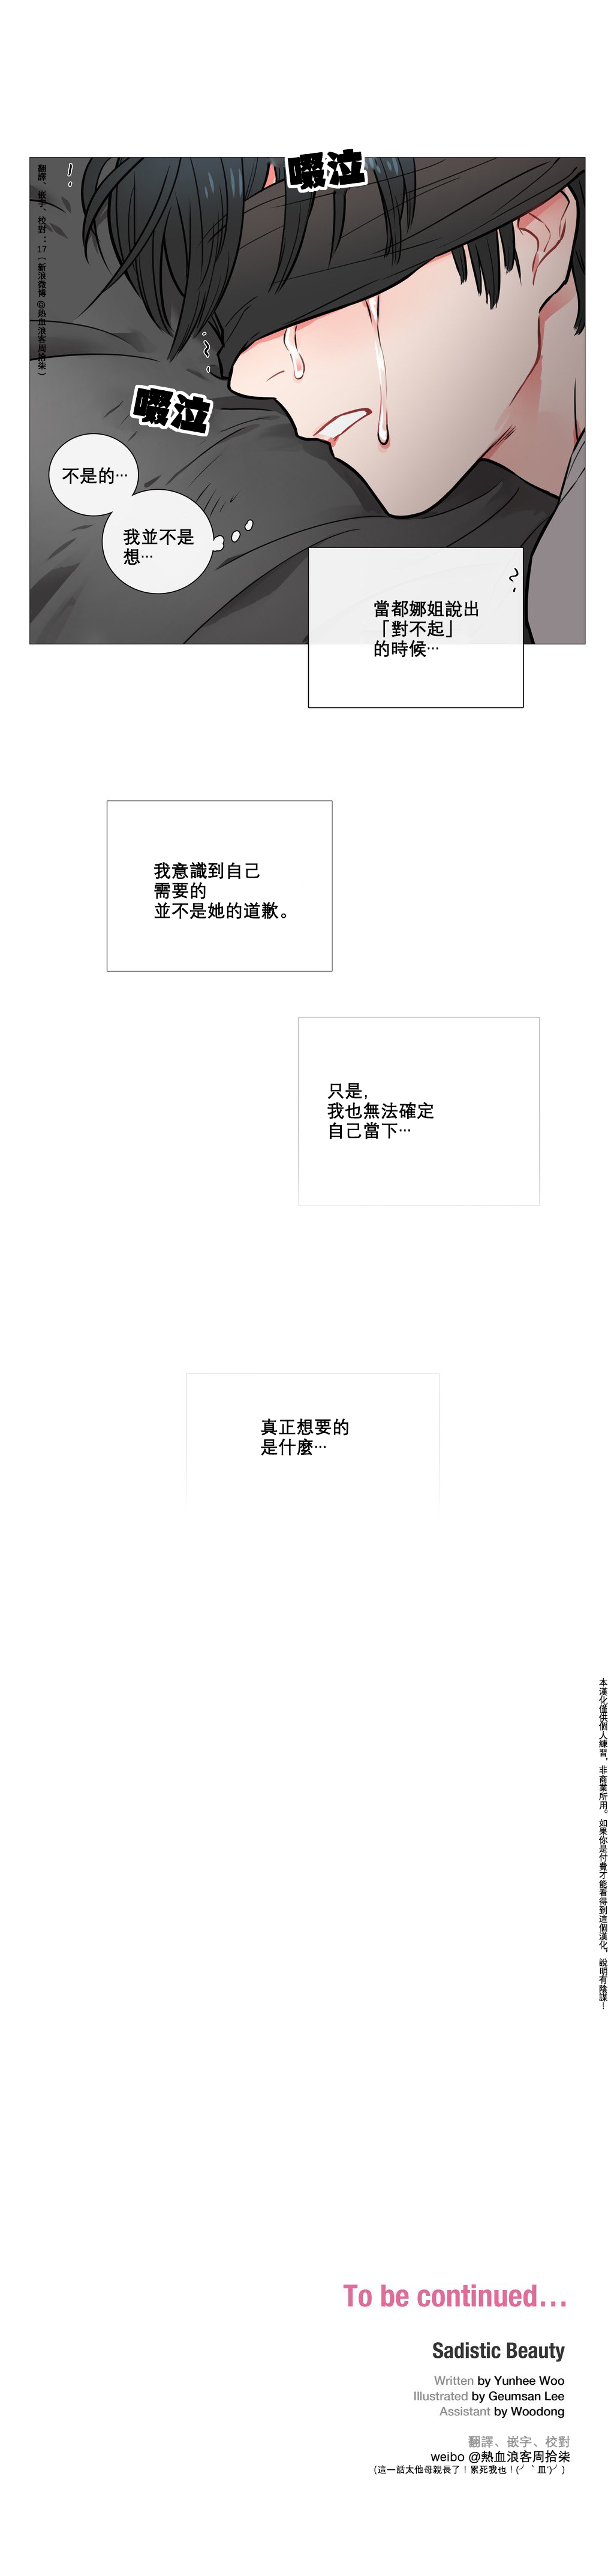 【神山】サディスティックビューティーCh.1-20【中国語】【17汉化】